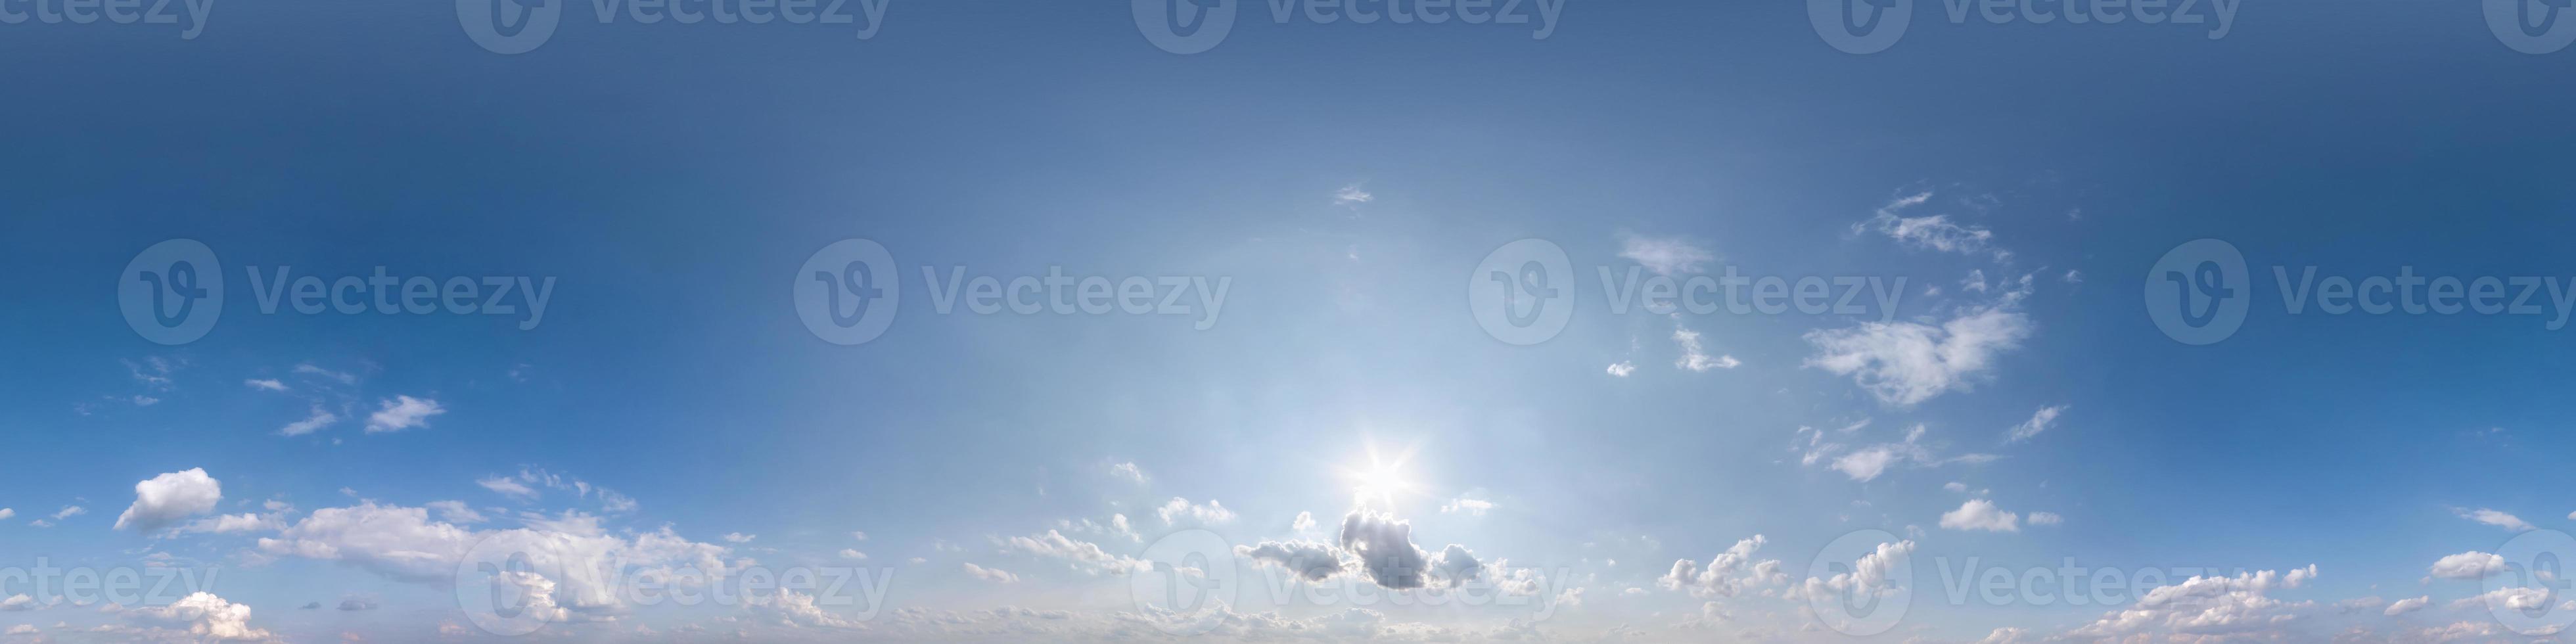 cielo azul transparente hdri panorama 360 grados ángulo de visión con cenit y hermosas nubes para usar en gráficos 3d como cúpula del cielo o editar tomas de drones. uso para el reemplazo del cielo foto